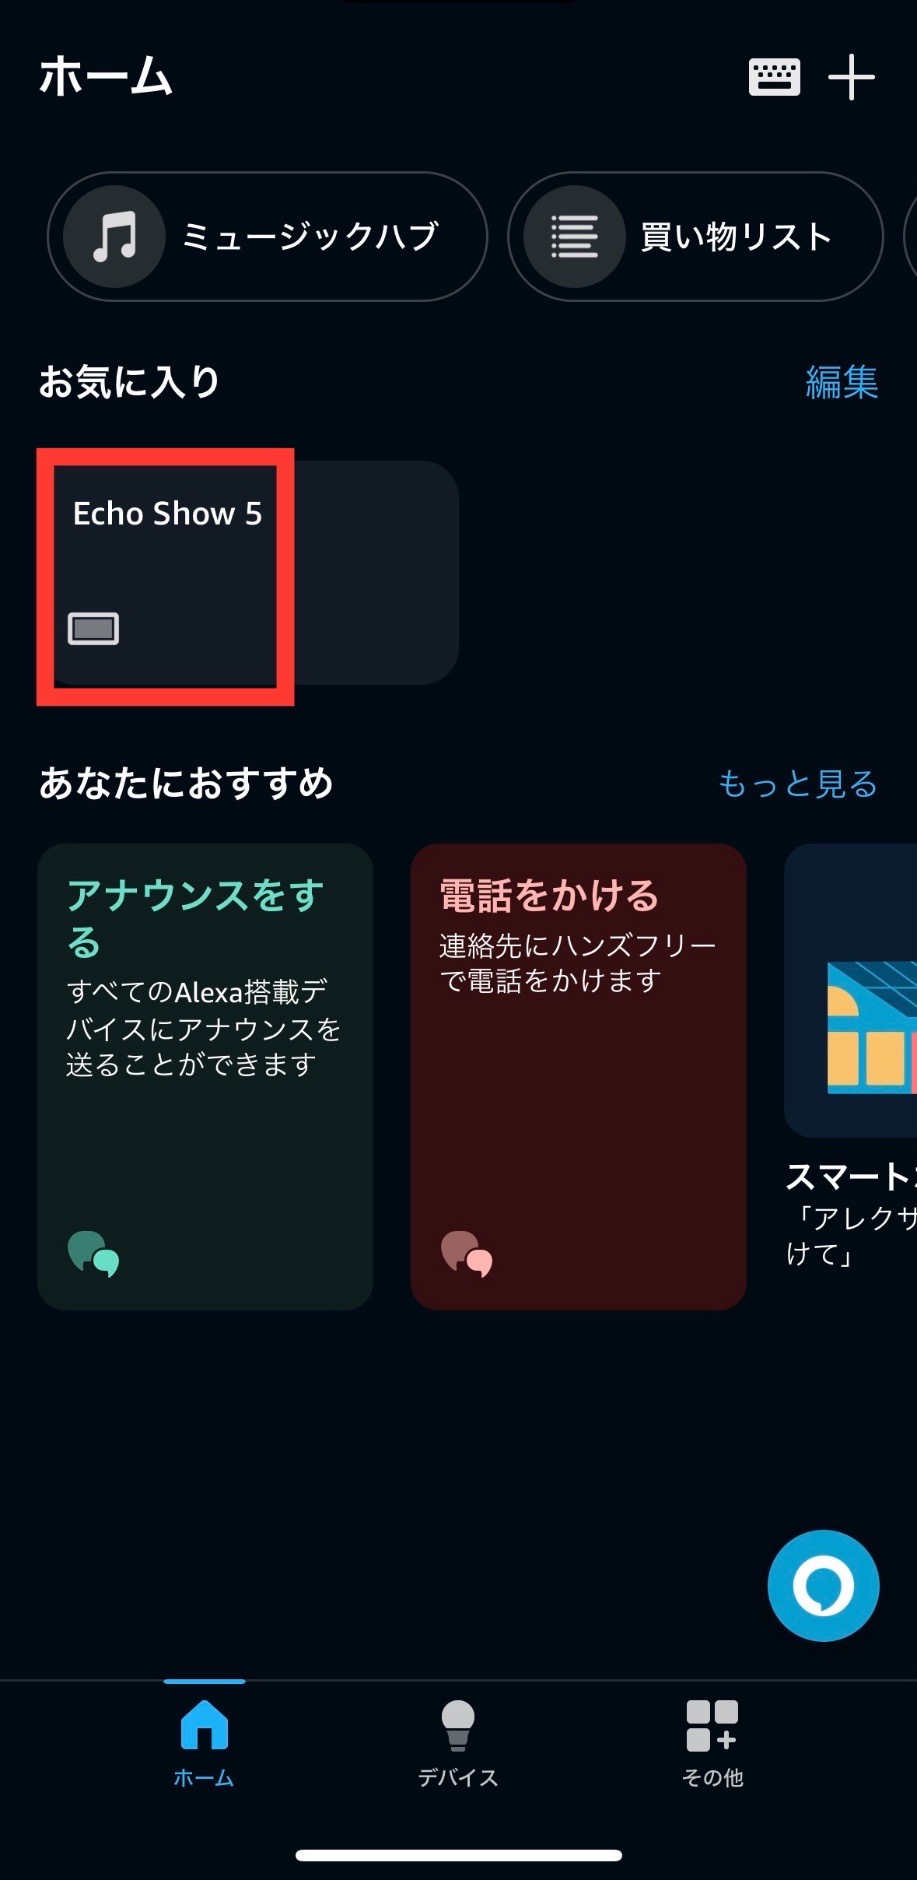 EchoShowを選択